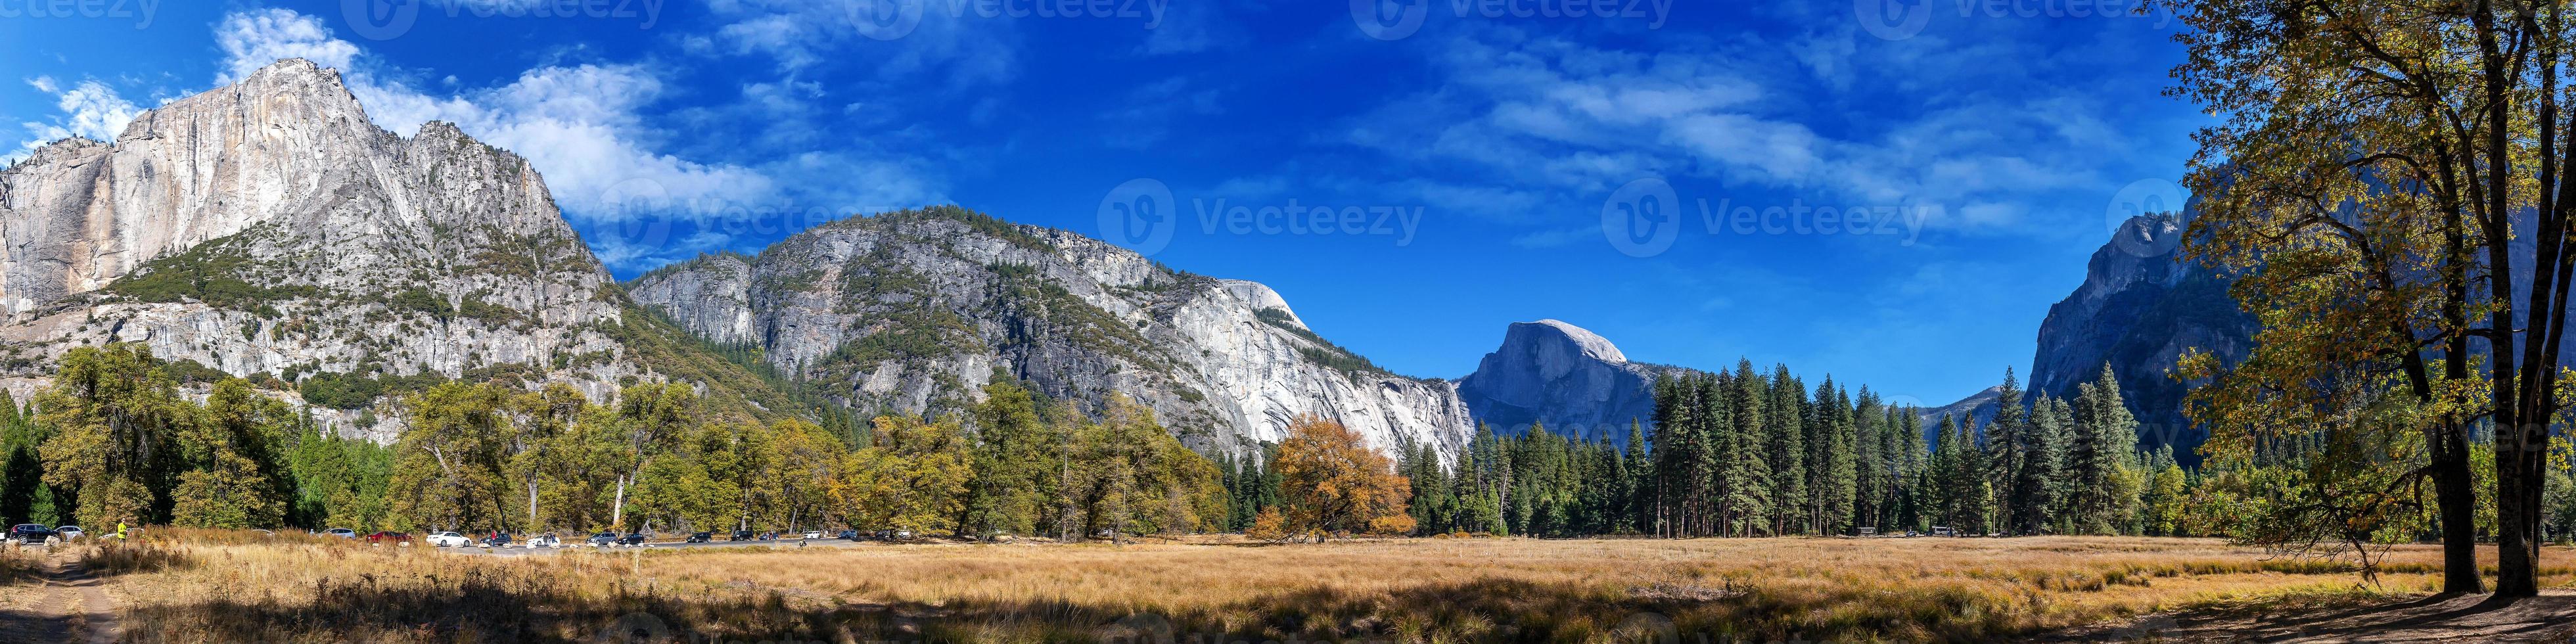 vista panoramica del parco nazionale di Yosemite in una giornata di sole. foto